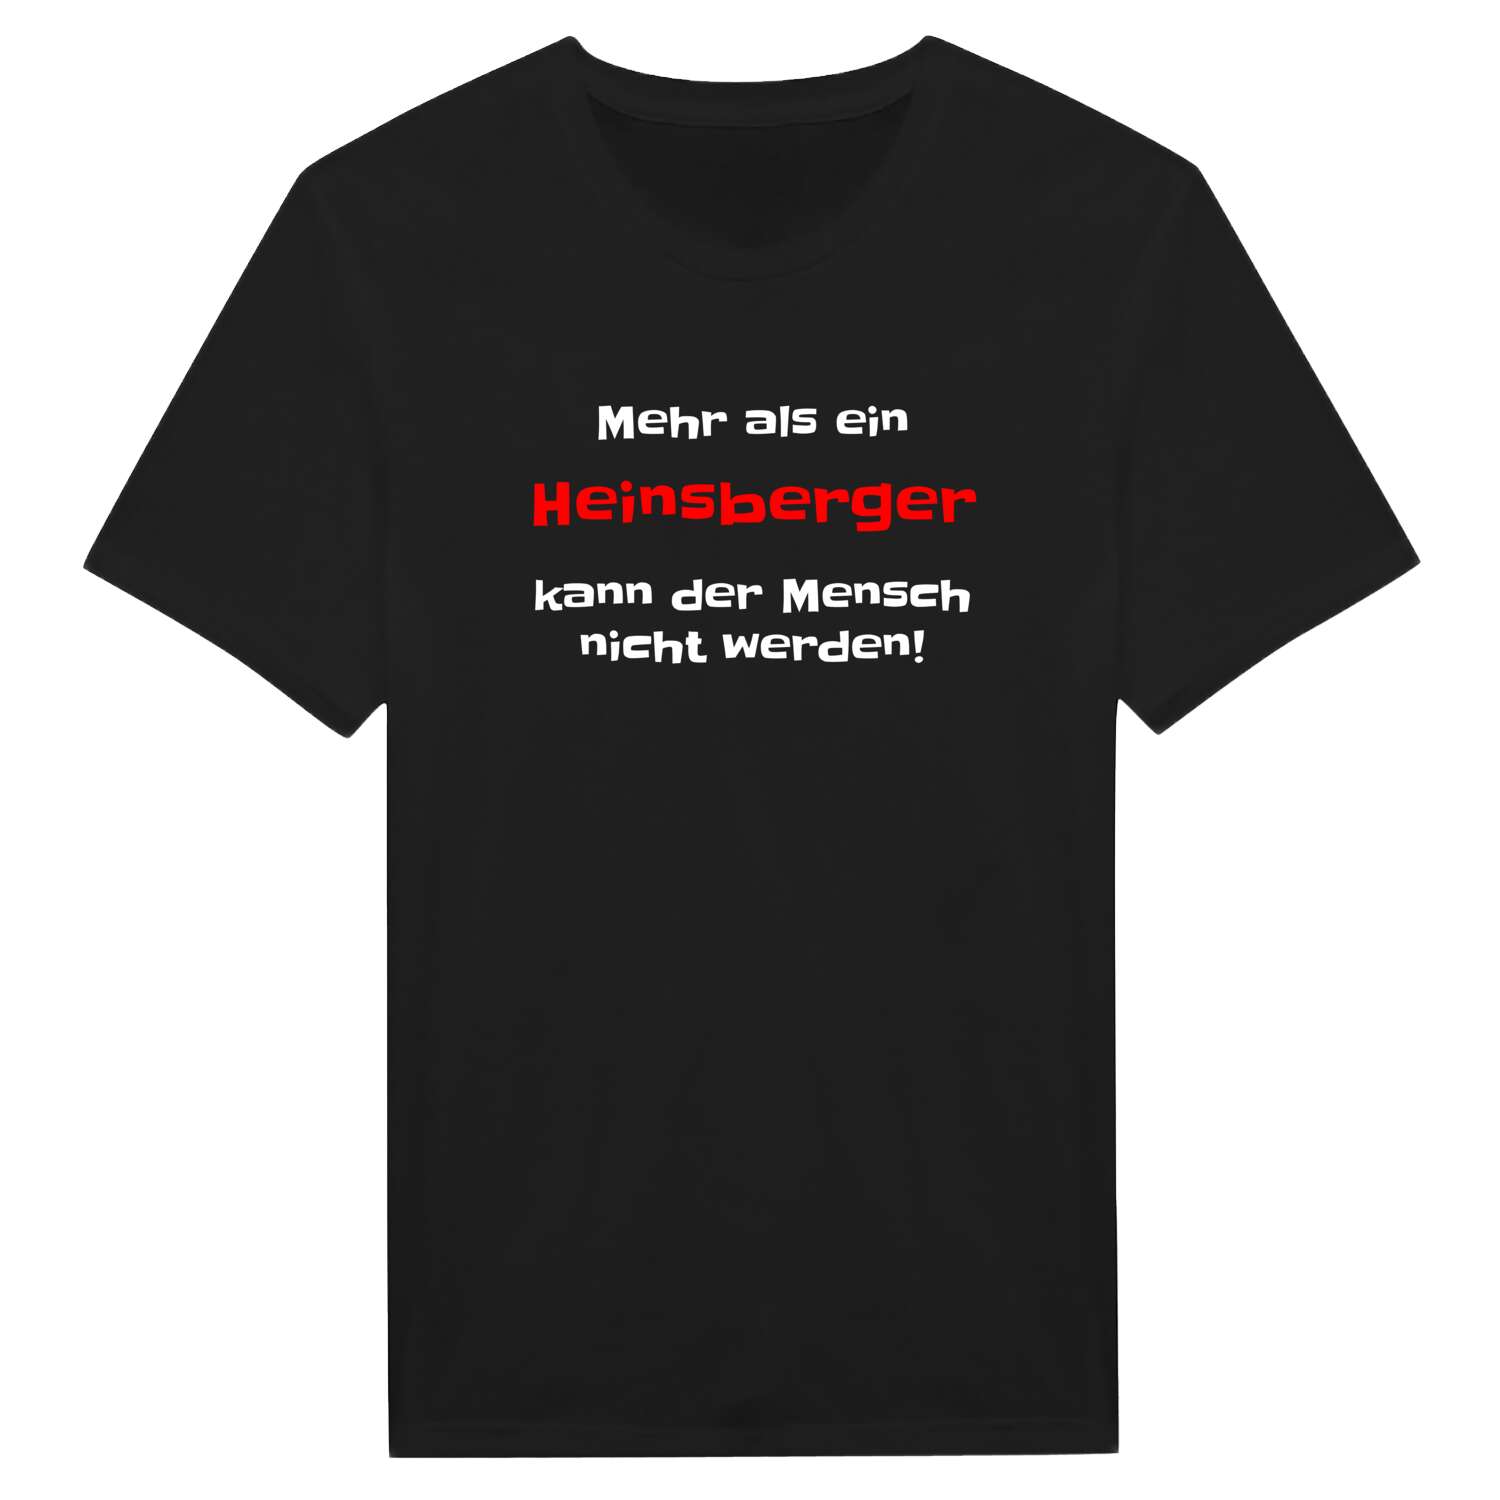 Heinsberg T-Shirt »Mehr als ein«